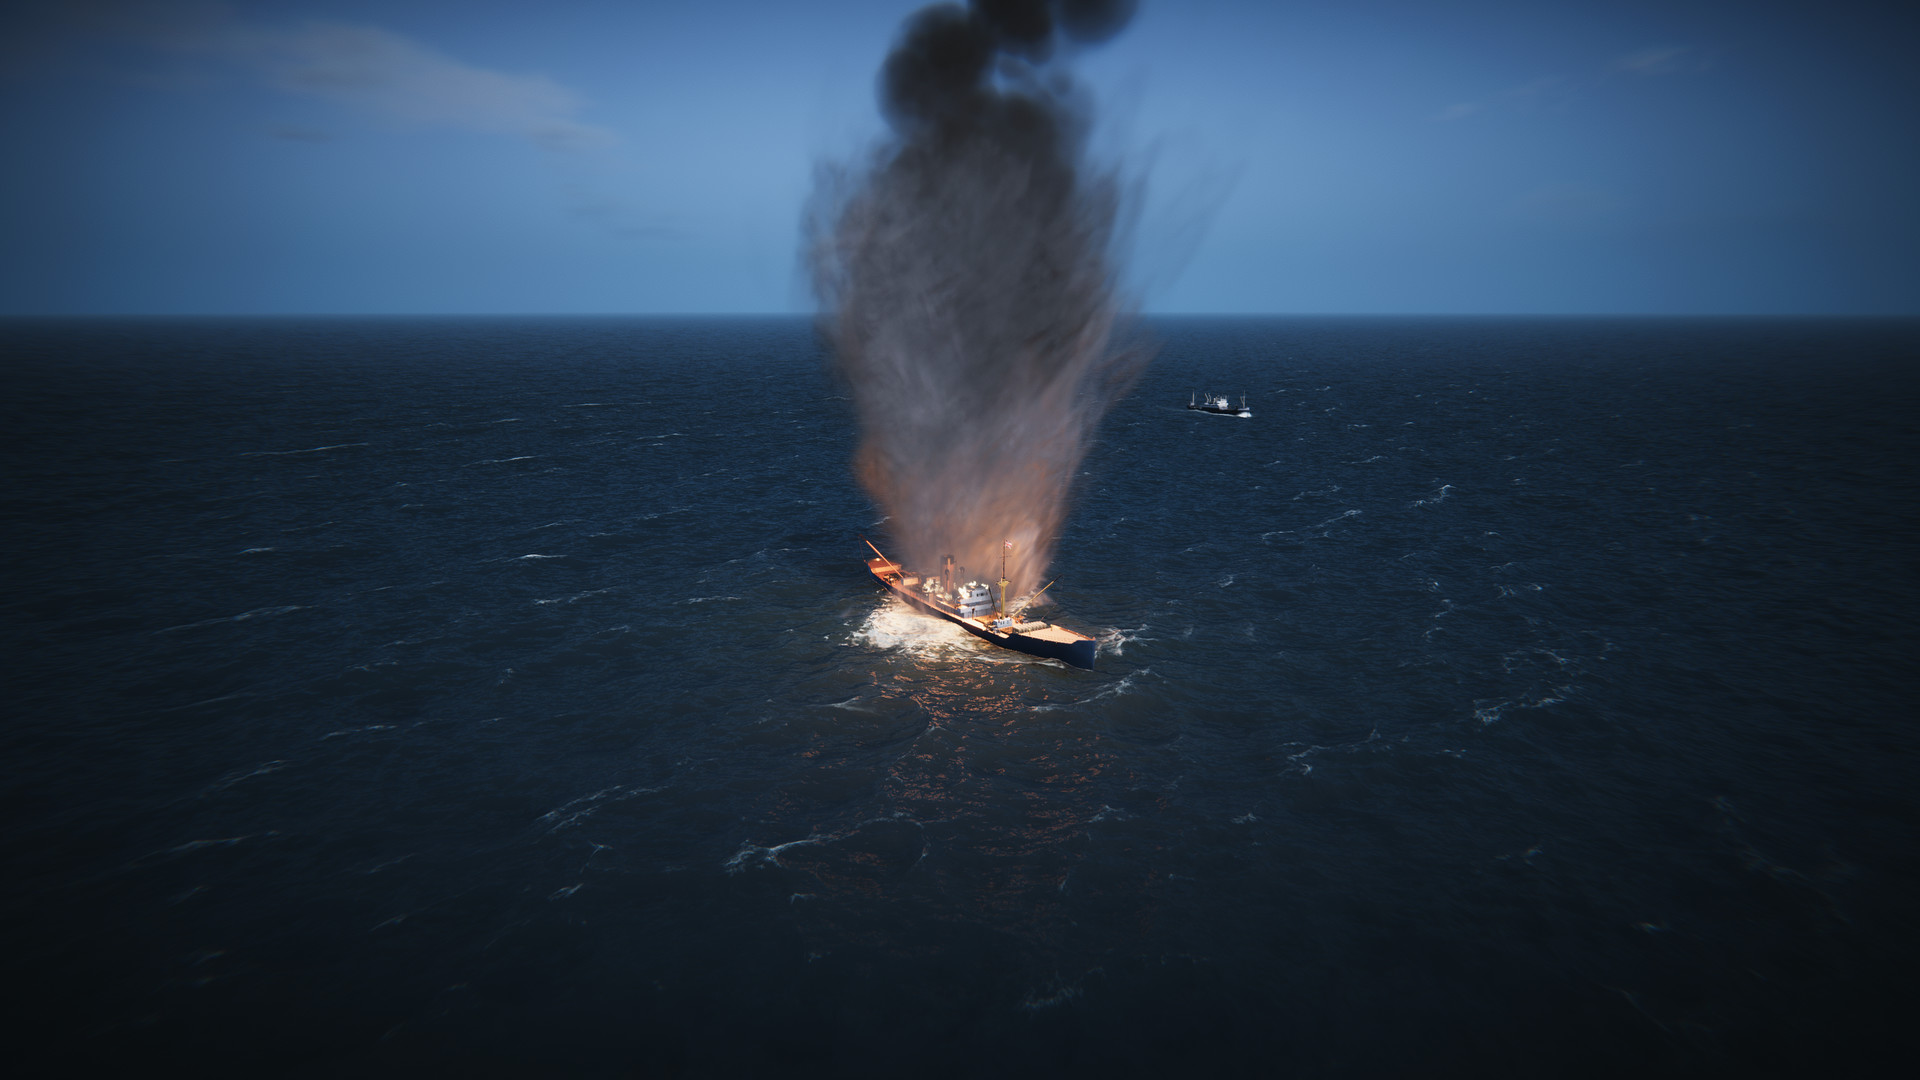 潜艇模拟游戏《Uboat》登陆Steam抢先体验 目前多半好评